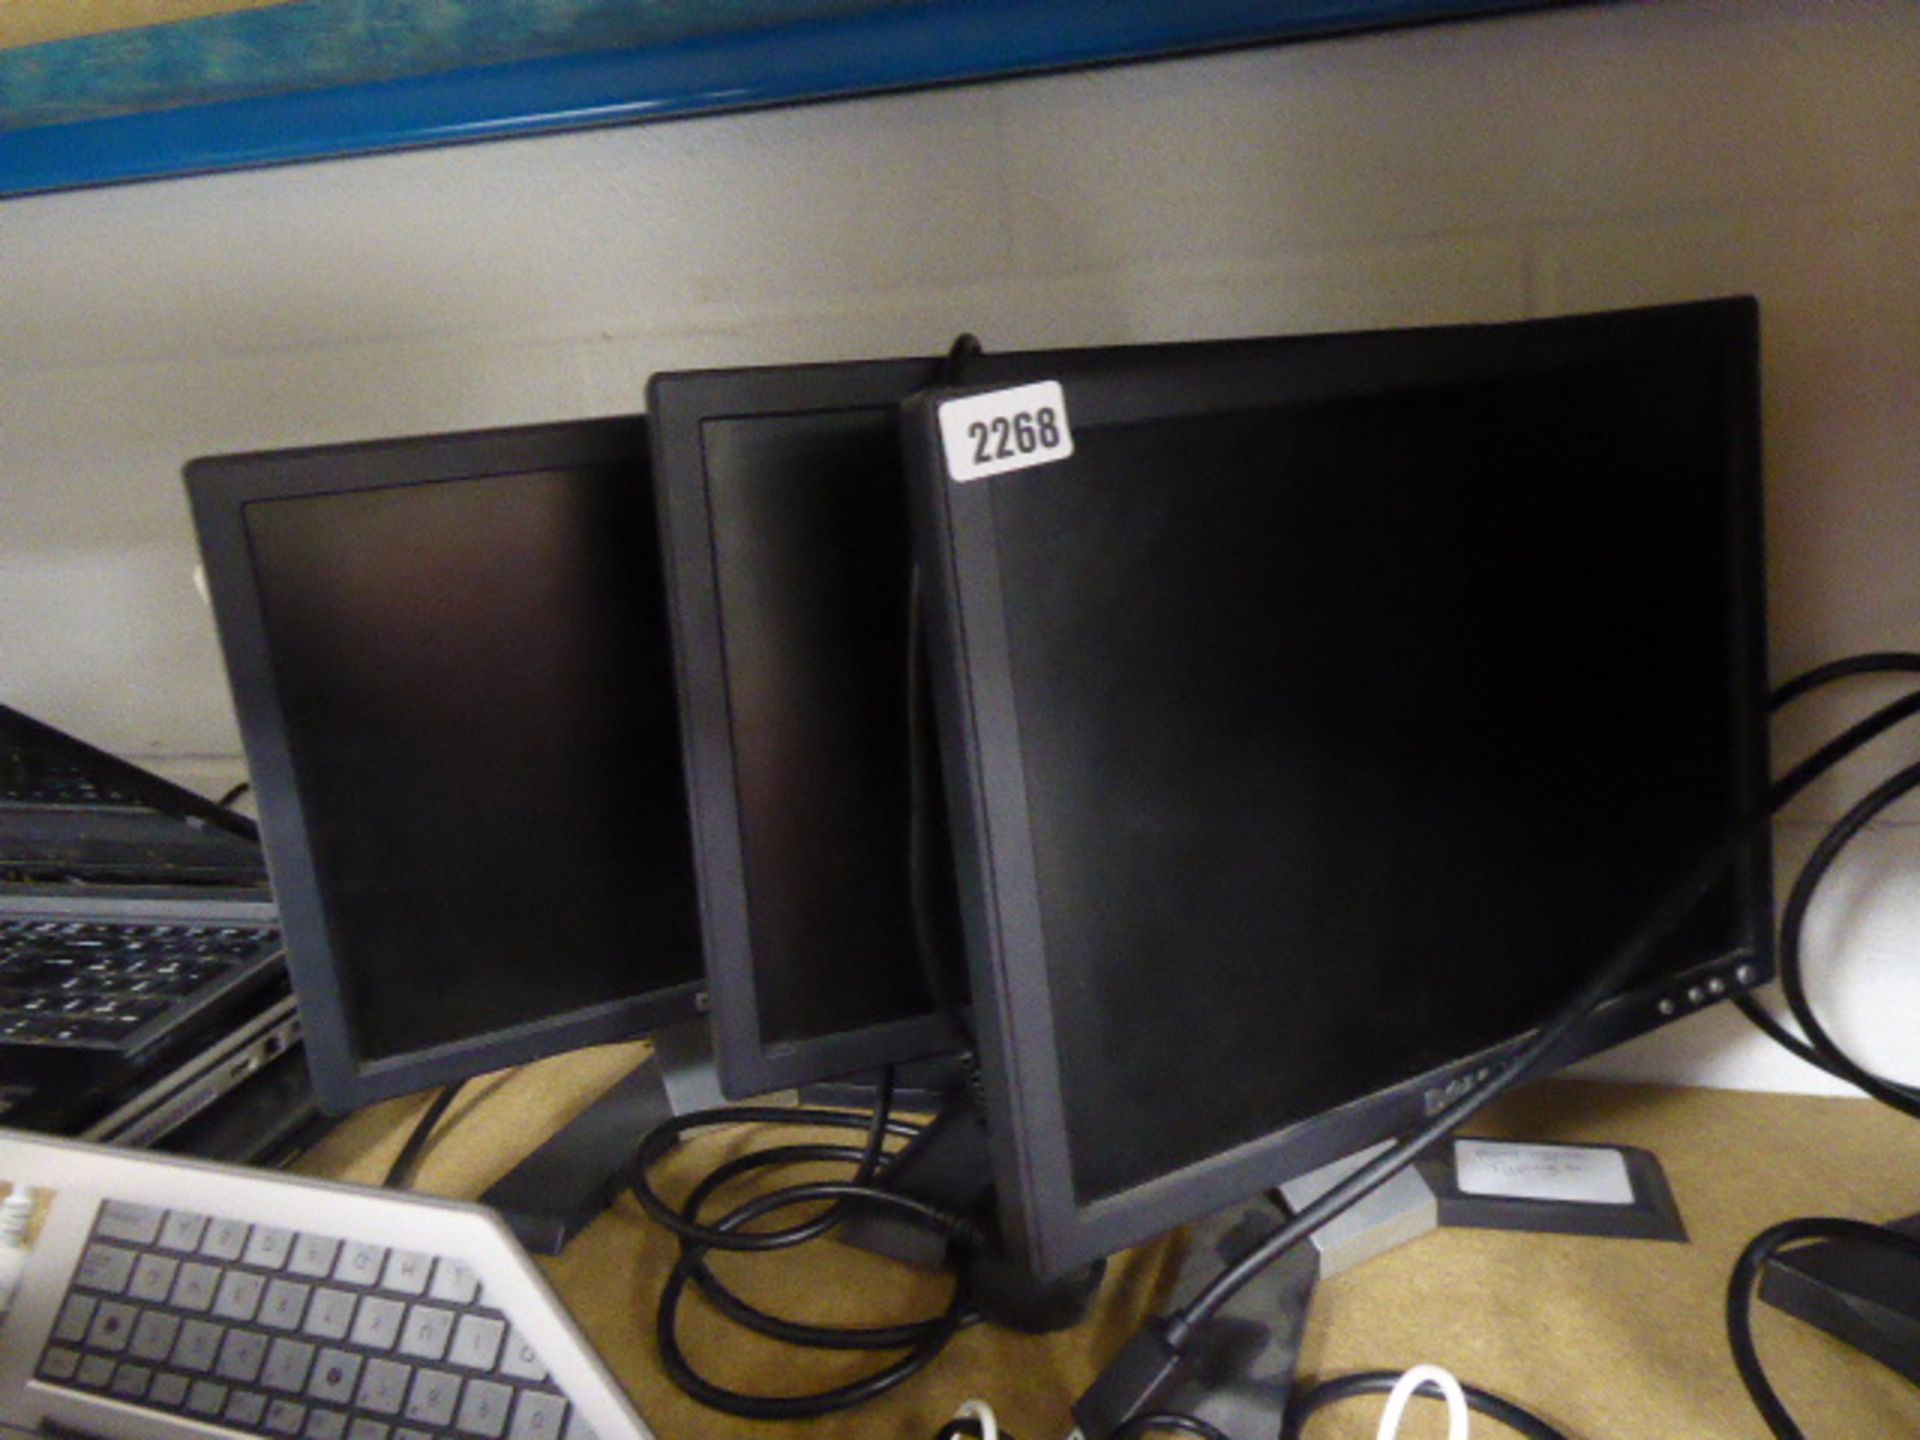 3 Dell PC monitors